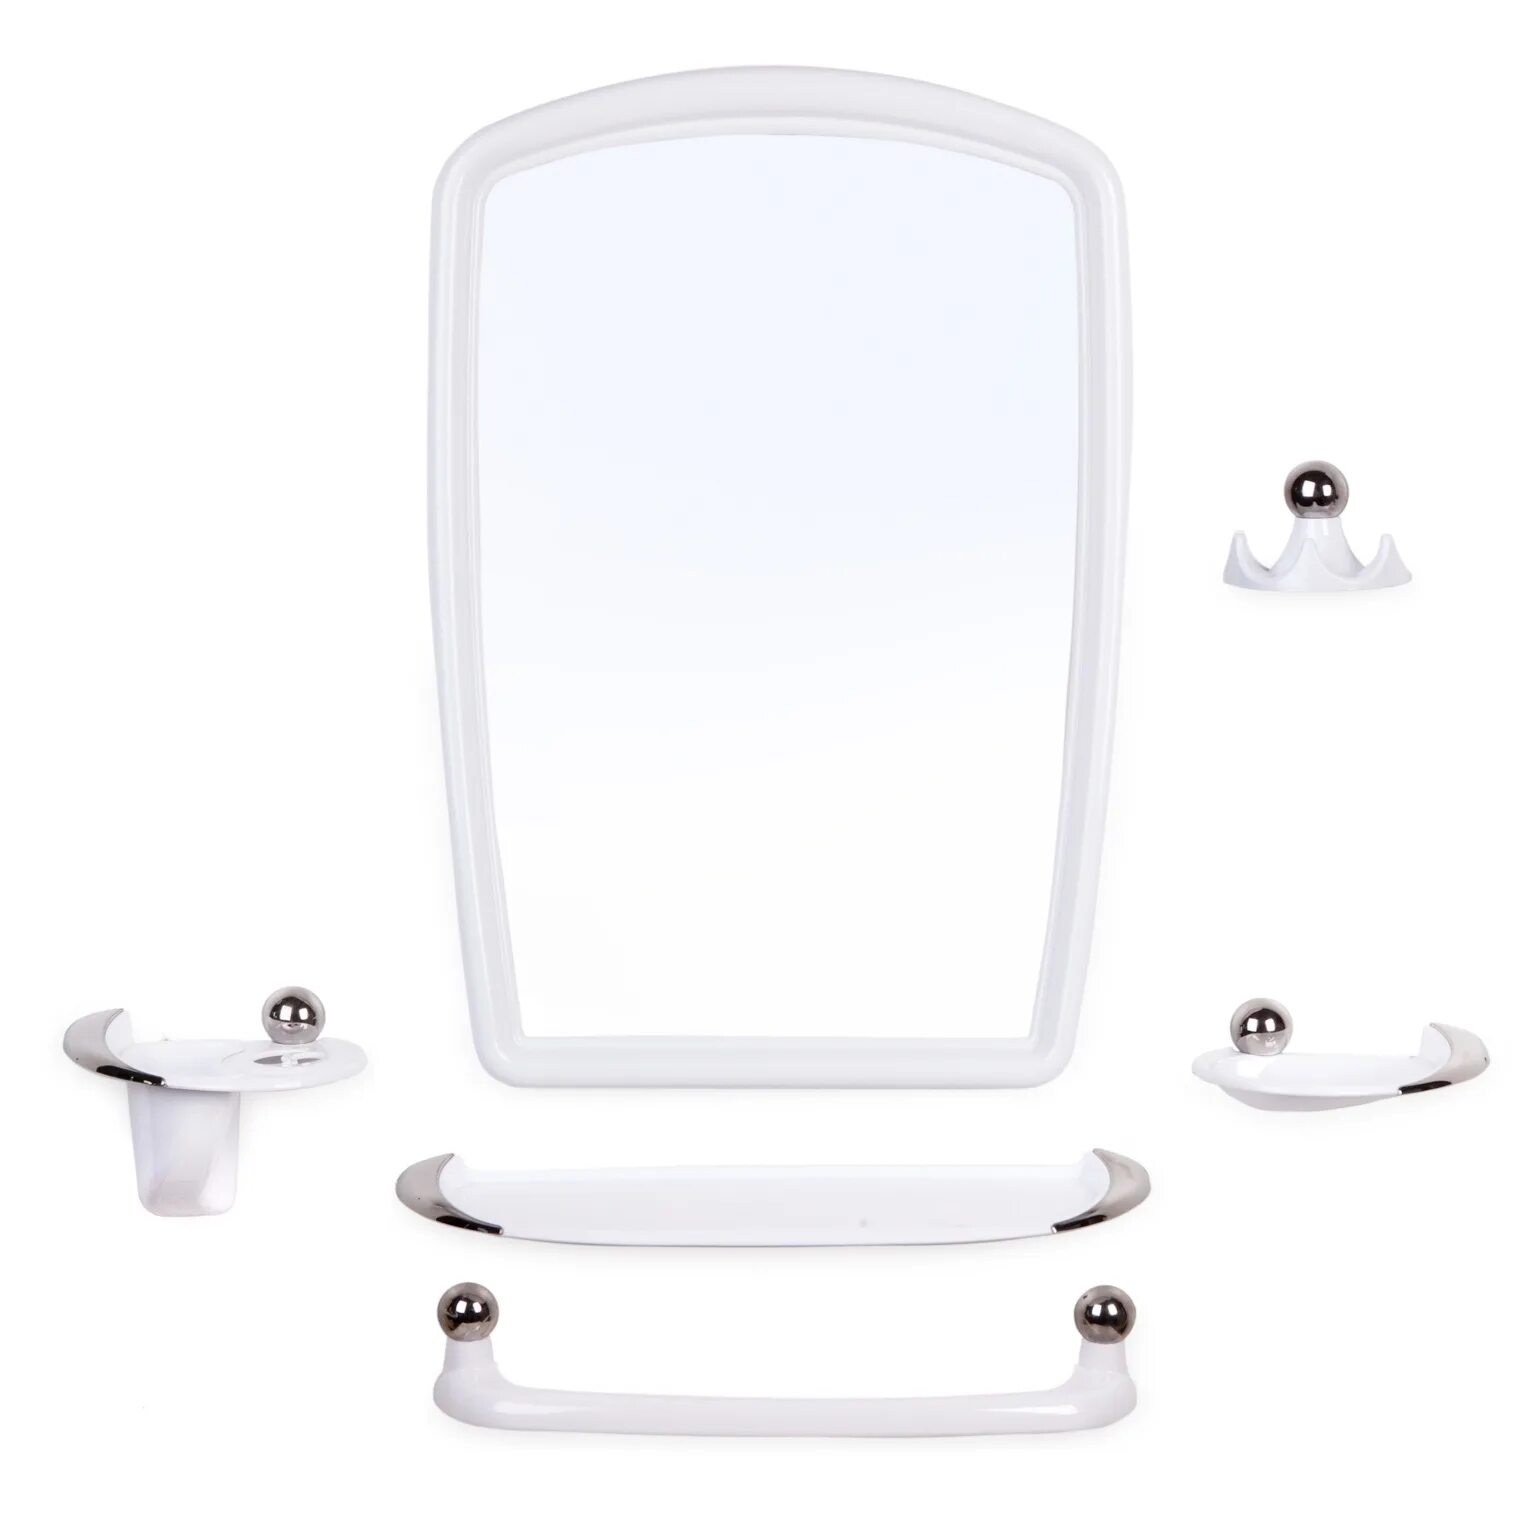 Зеркало 35х52 см, прямоугольное, снежно-белое, с полочкой, Berossi, нв 04101000. Berossi зеркало для ванной. Зеркало 35х52 см, прямоугольное, снежно-белое, с полочкой, Berossi, нв 05101000. Набор для ванной комнаты "Вива Грация". Набор для ванной с зеркалом